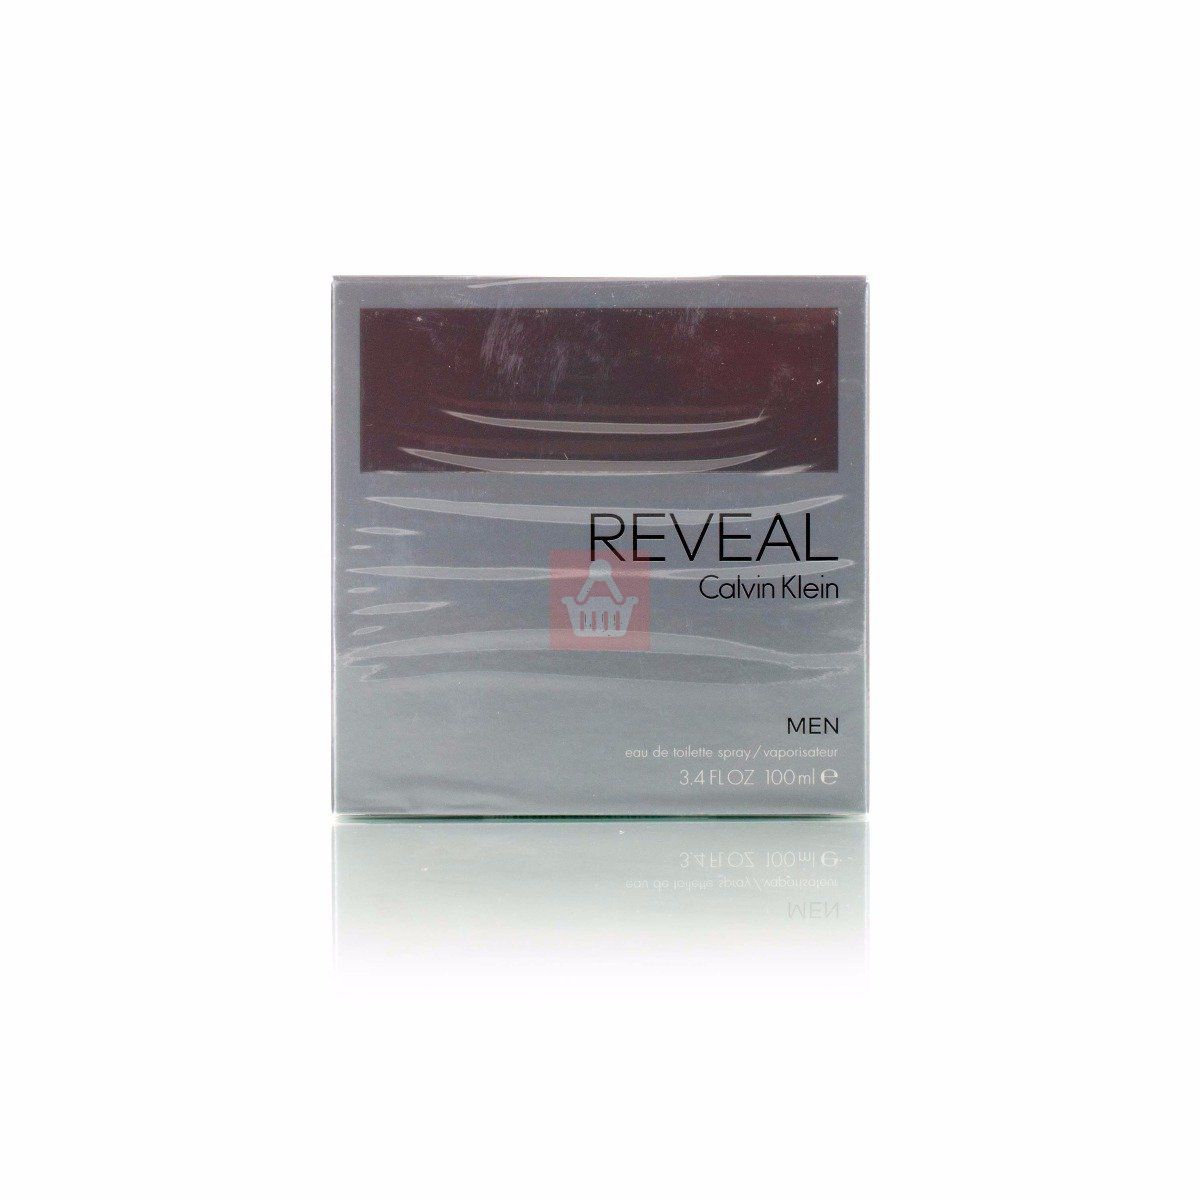 CALVIN KLEIN REVEAL For Men EDT Perfume Spray 3.4oz - 100ml - (BS)